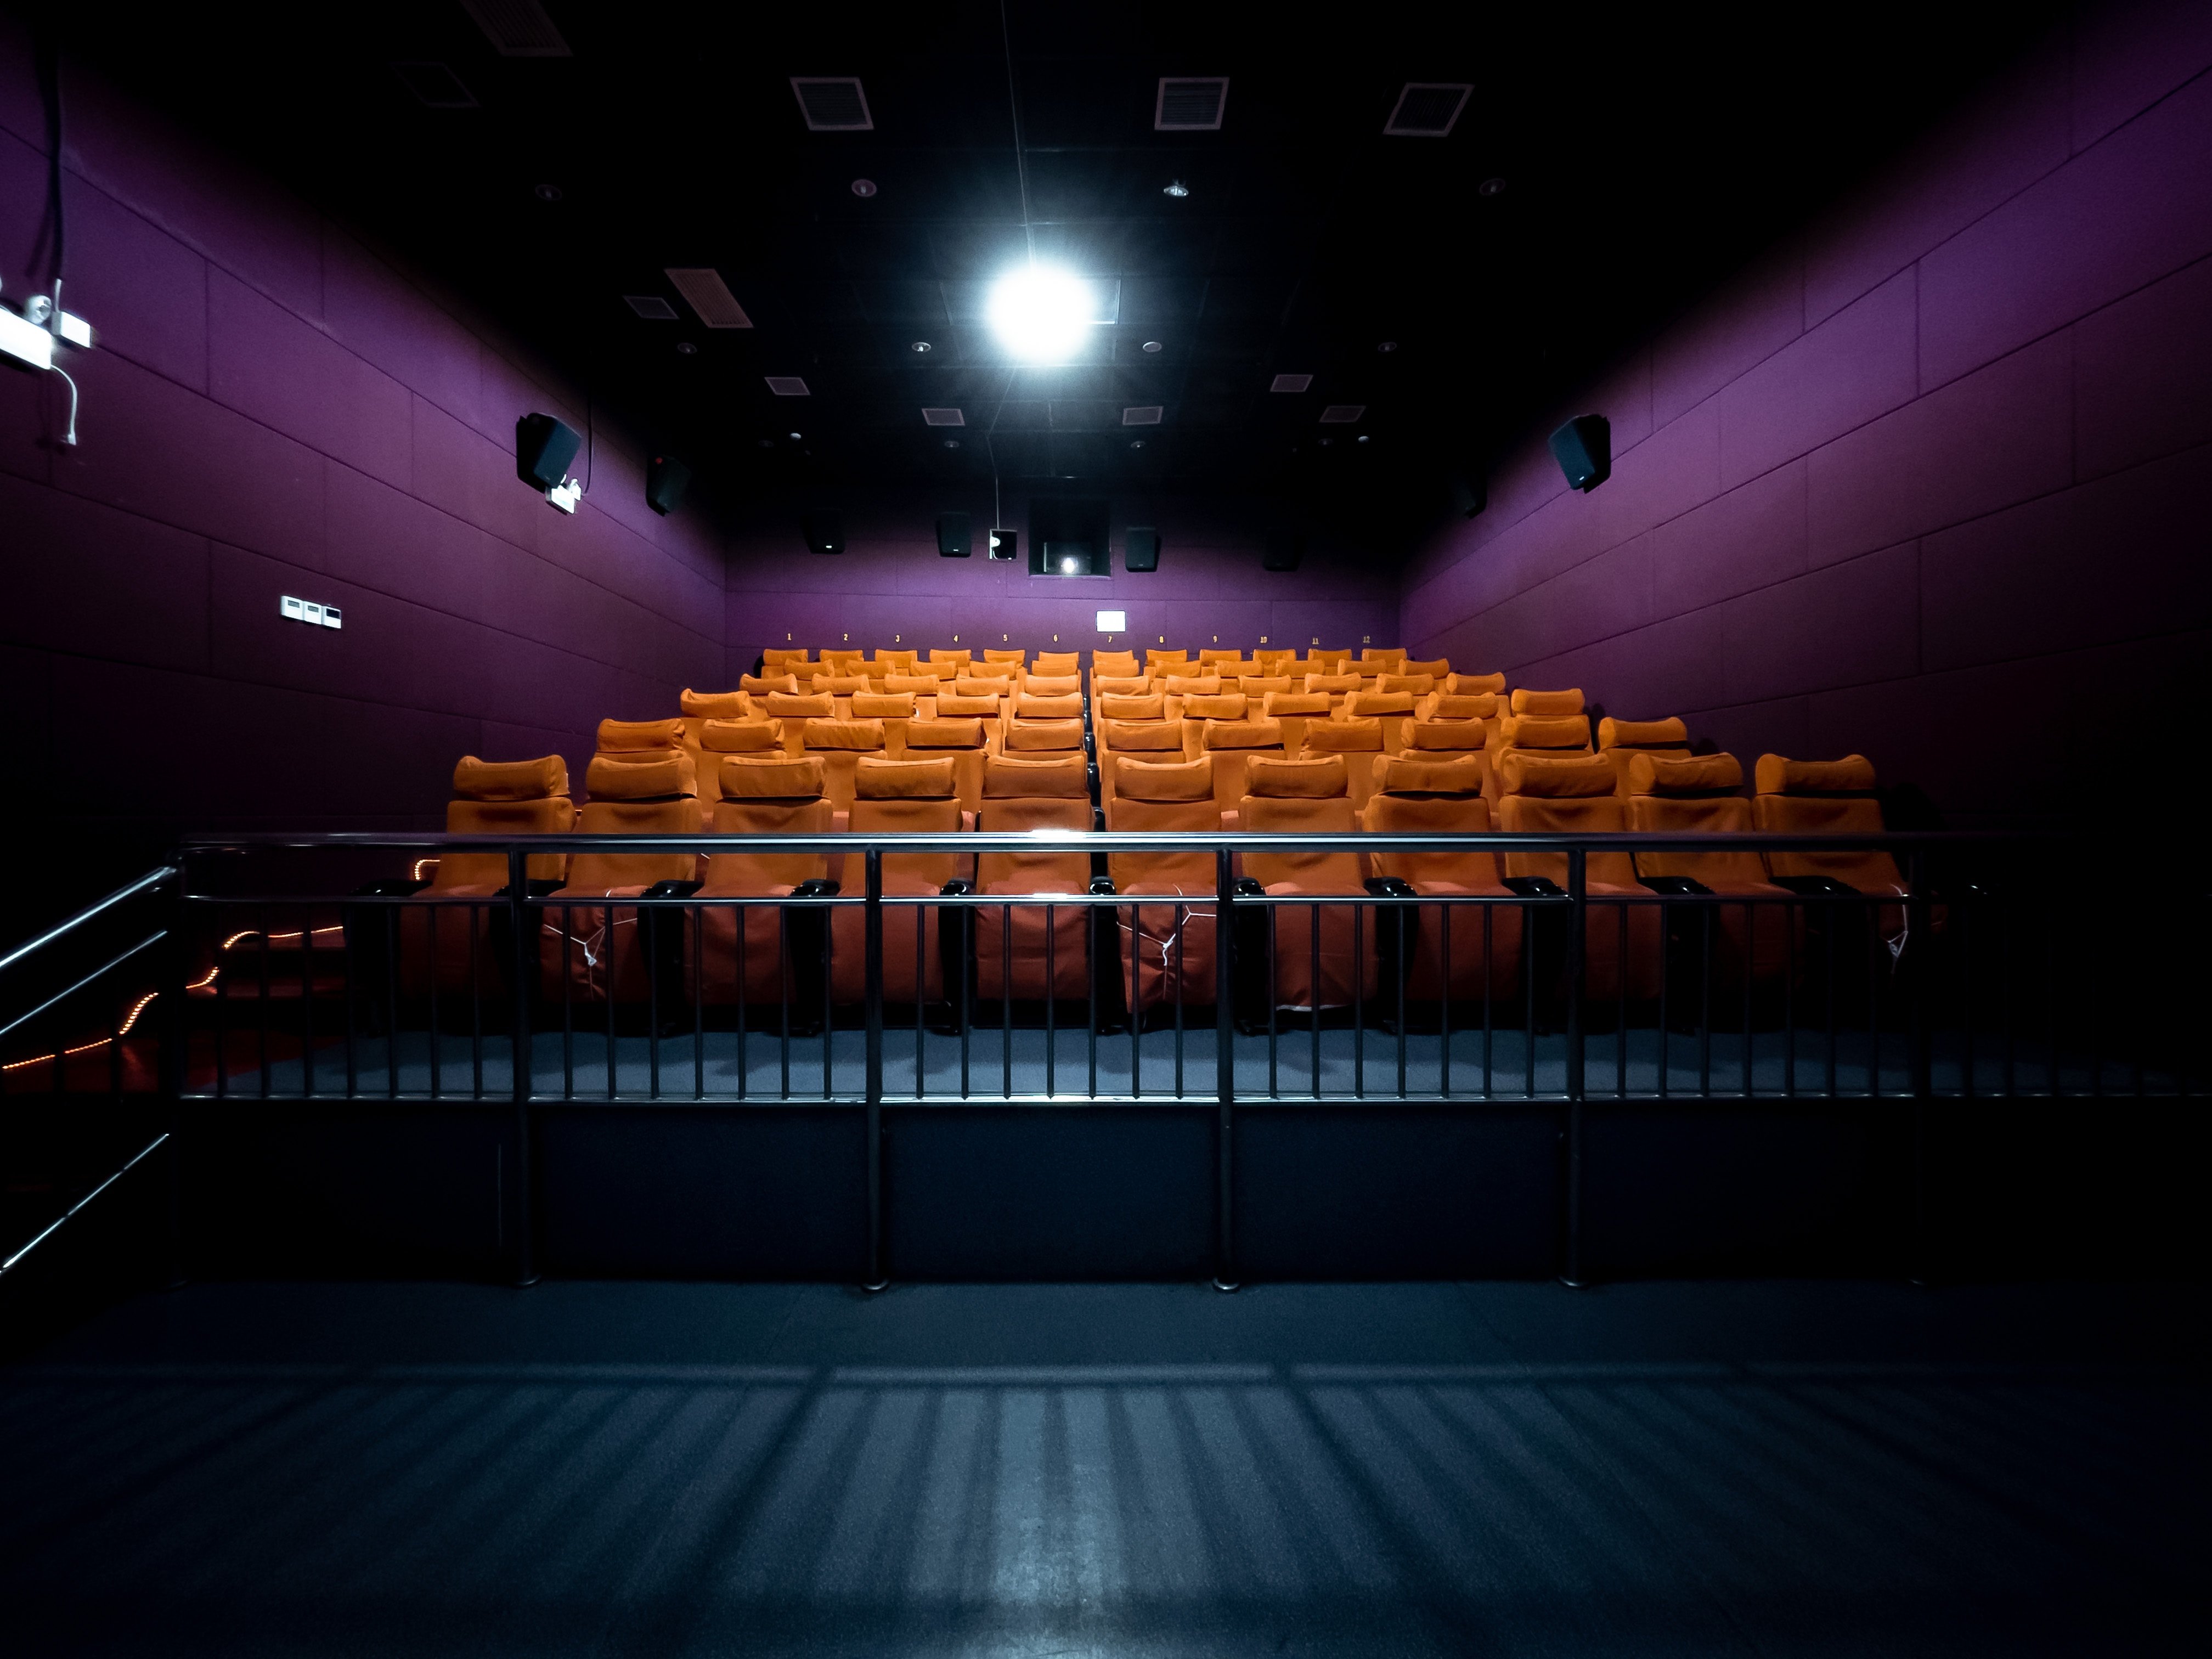 Perlu adanya penambahan infrastruktur bioskop untuk perfilman nasional (Sumber gambar: Rudy Dong/Unsplash)